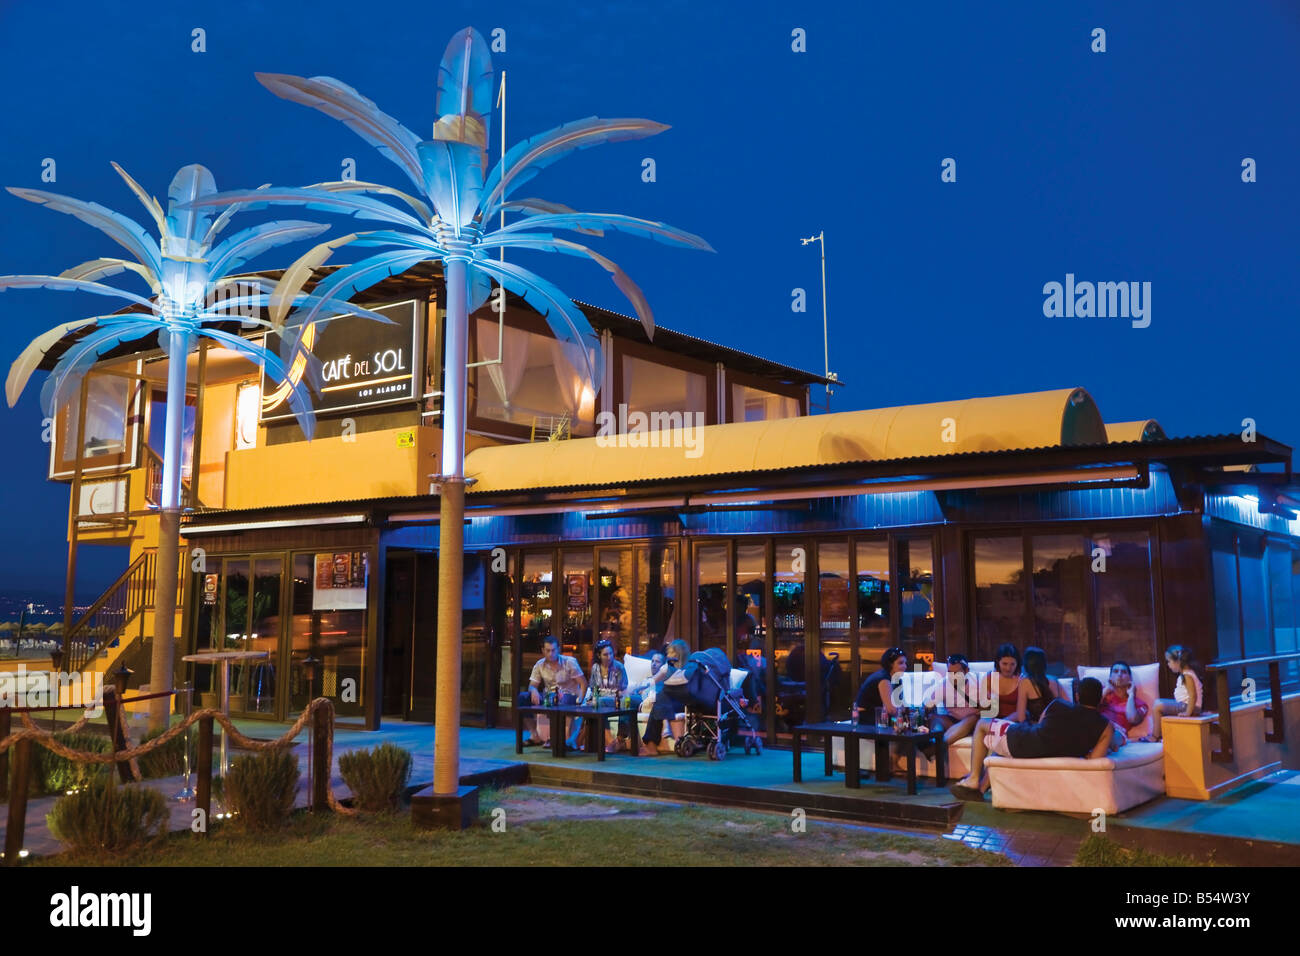 La province de Malaga Torremolinos Costa del Sol Espagne Cafe del Sol sur la plage de Los Alamos de nuit Banque D'Images